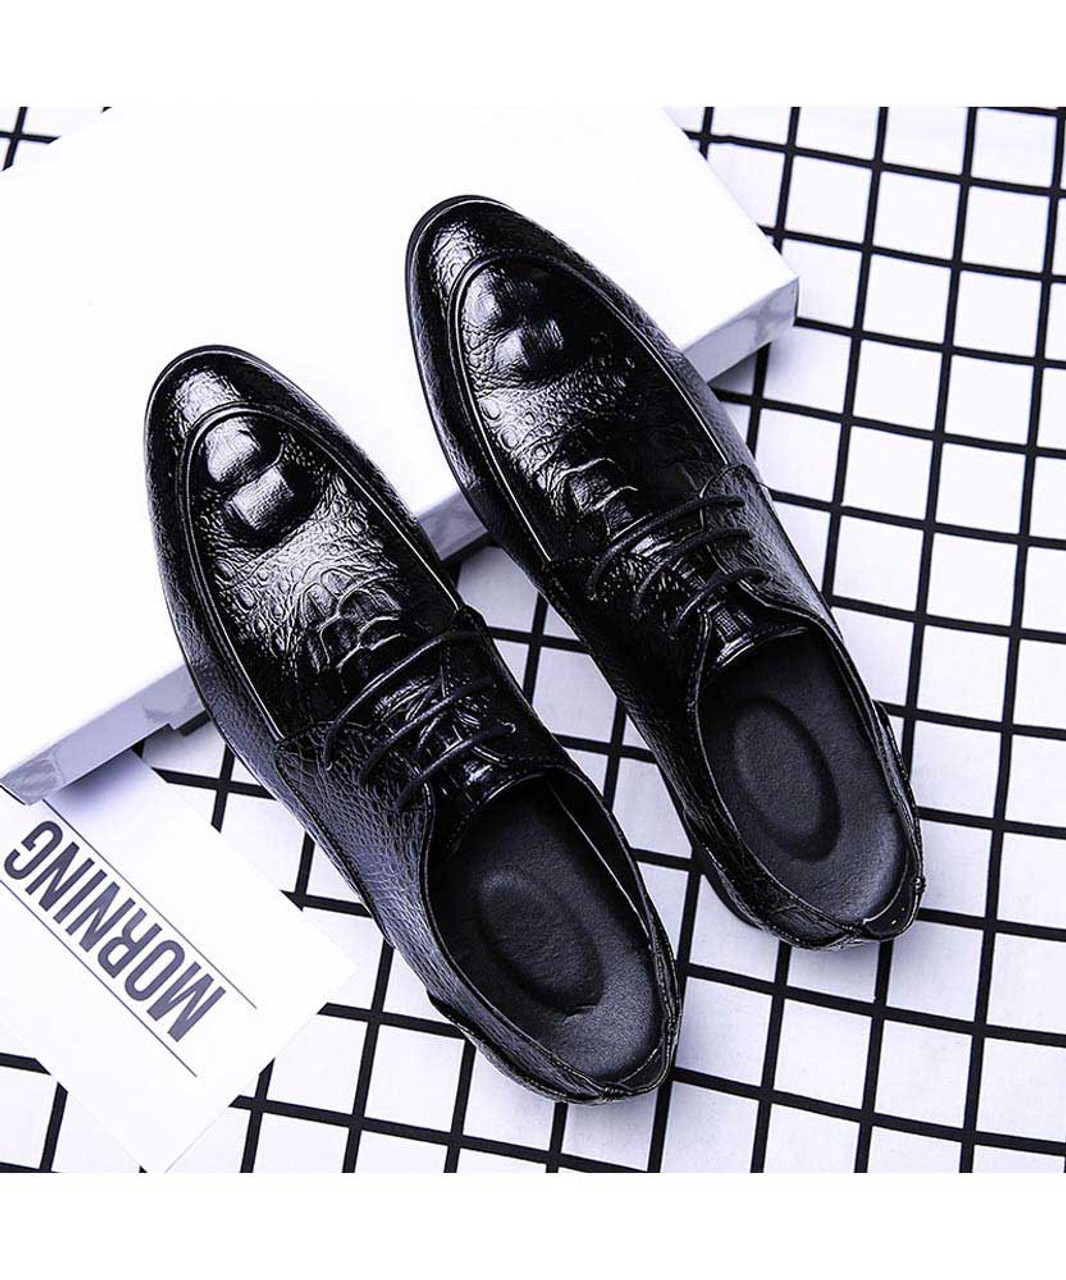 Black crocodile skin pattern derby dress shoe | Mens dress shoes online ...